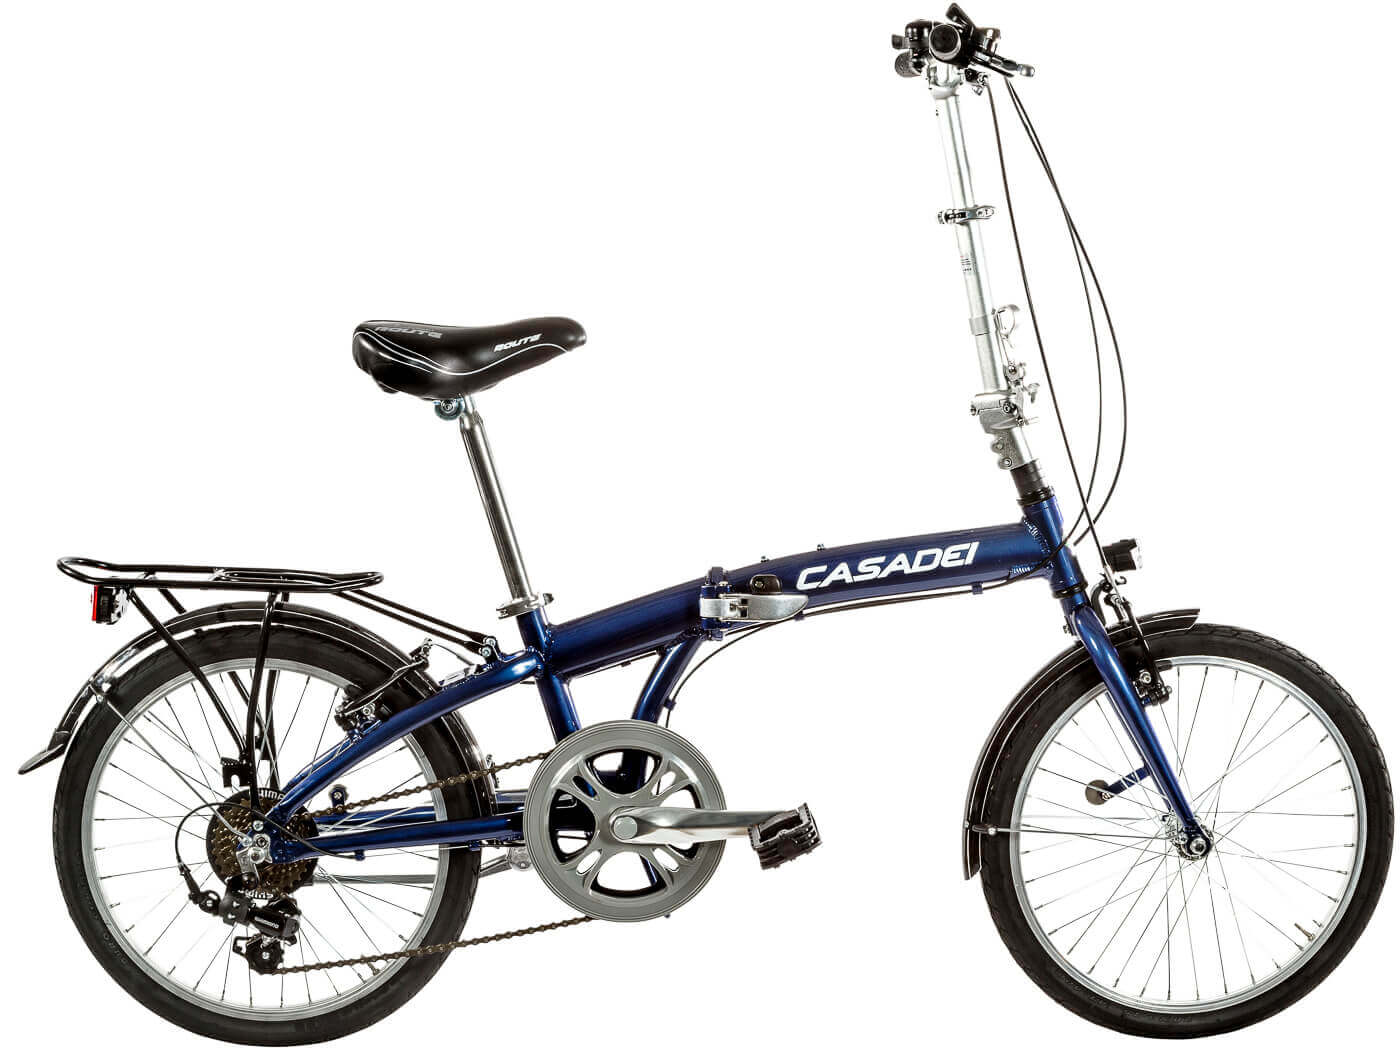 Bicicleta plegable Casadei CD20 Alu 7v rueda 20